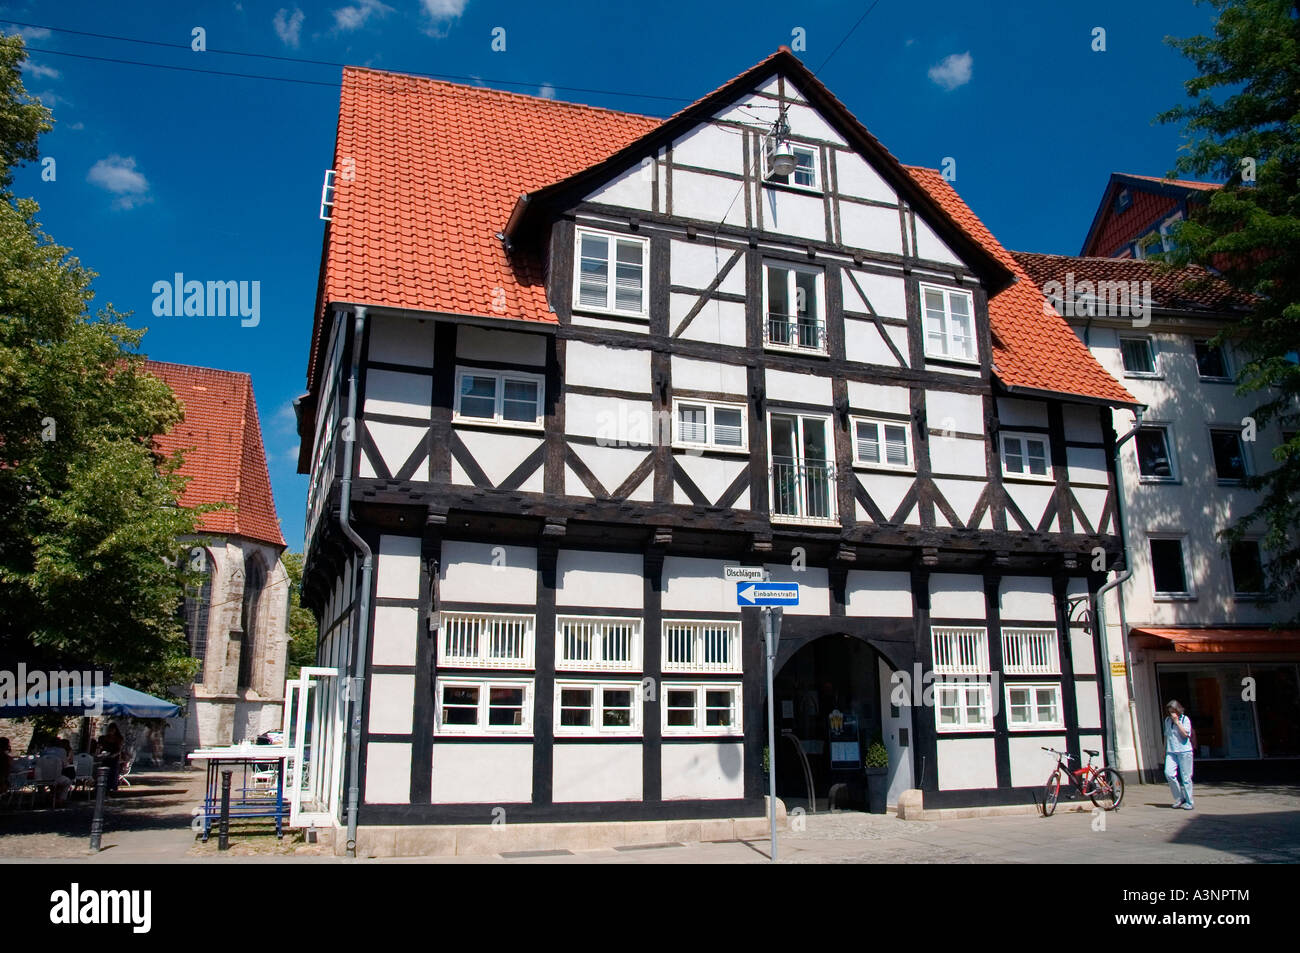 Braunschweig / maison à colombages Banque D'Images